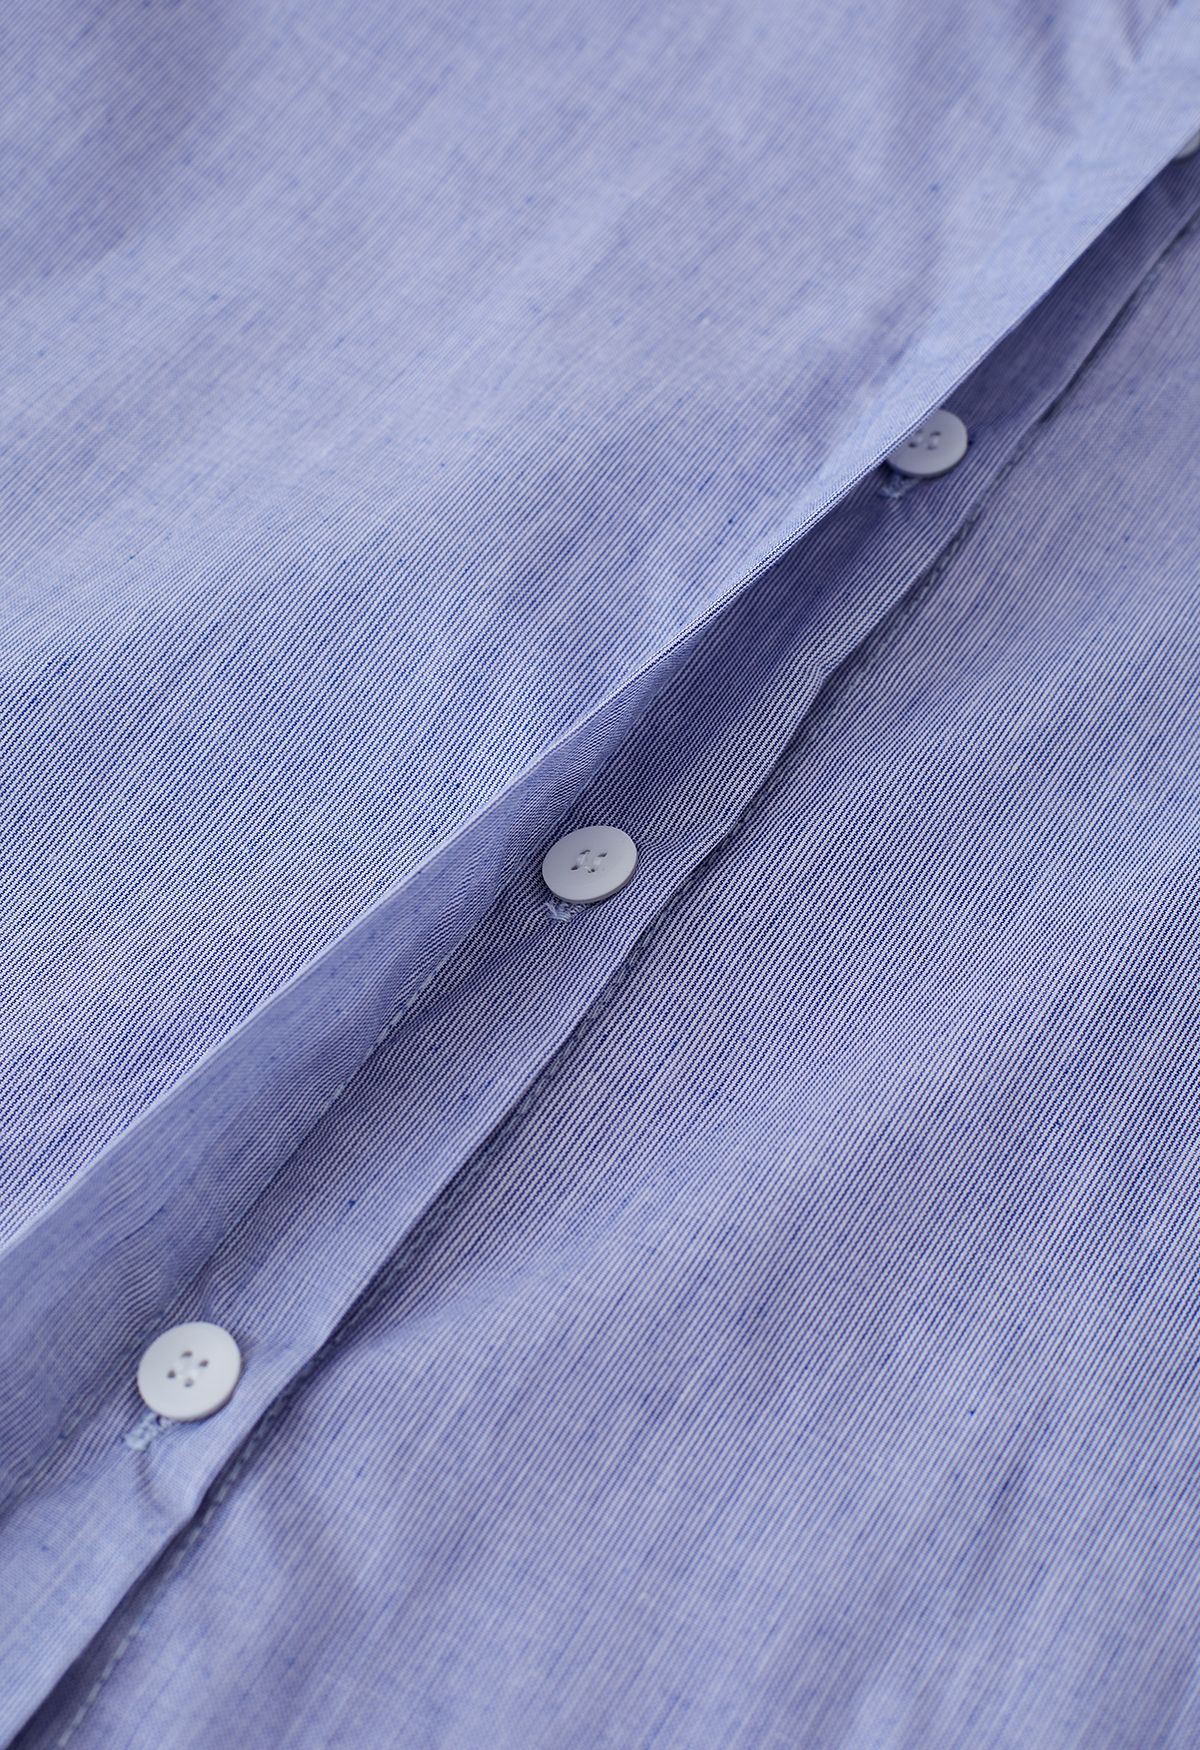 Nadelstreifen-Baumwollhemd mit Blasenärmeln in Blau